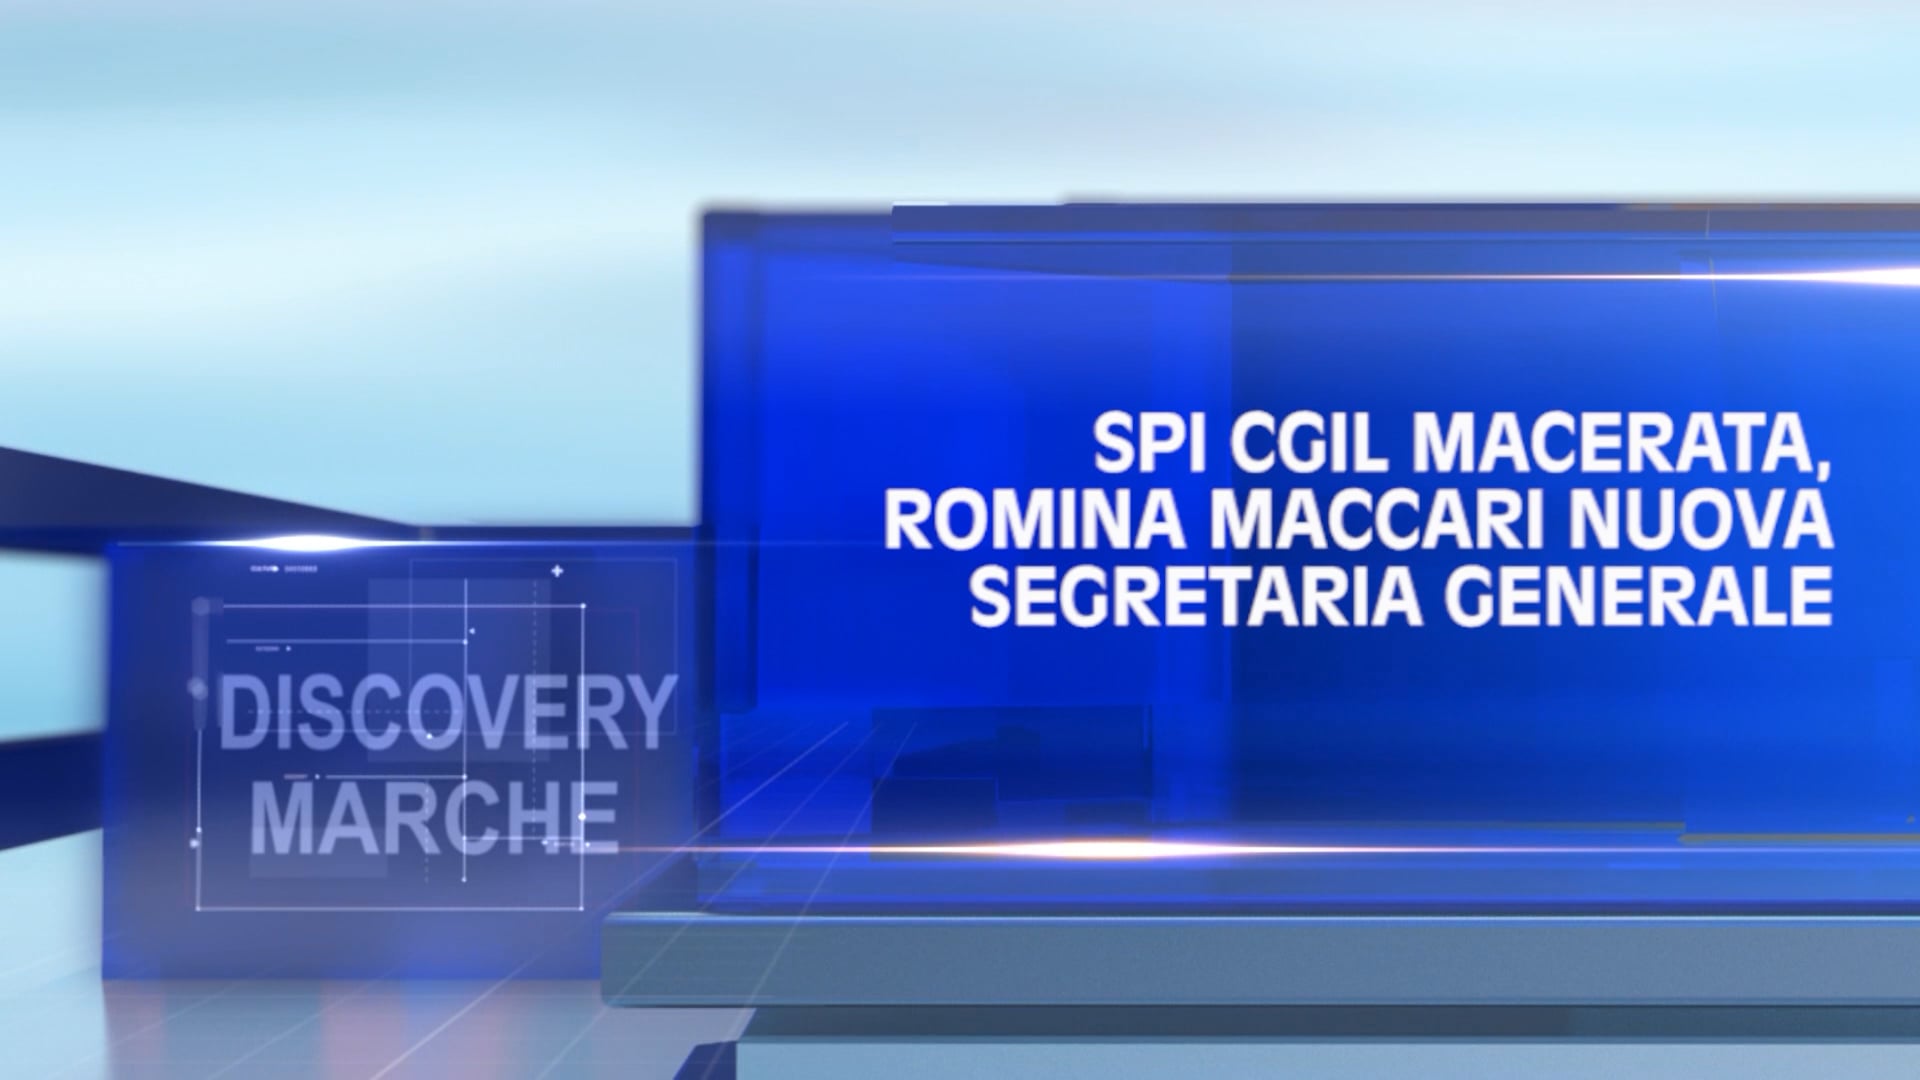 Discovery Marche - SPI Cgil Macerata, Romina Maccari nuova Segretaria Generale